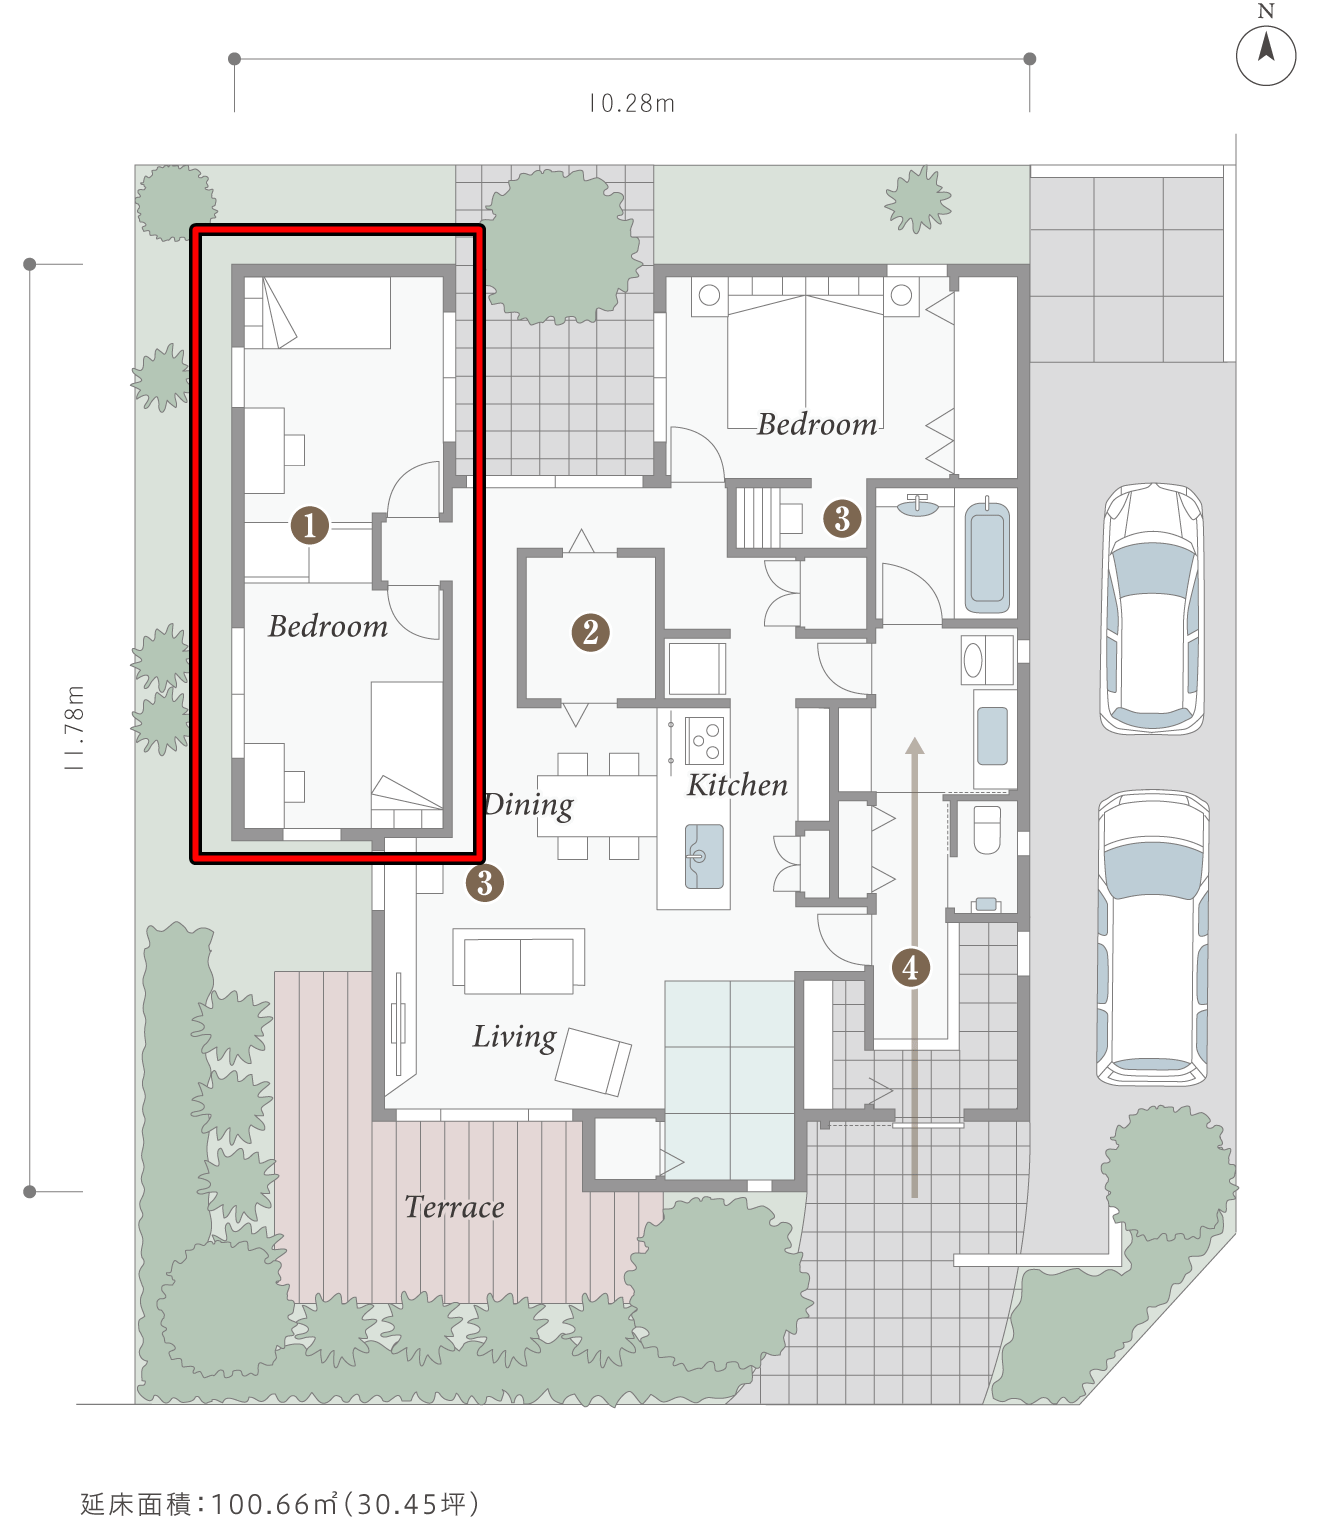 パナソニックホームズさんの平屋「カサートX 平屋LCCMモデル」の可動間仕切収納で間取り変更が容易な子供部屋